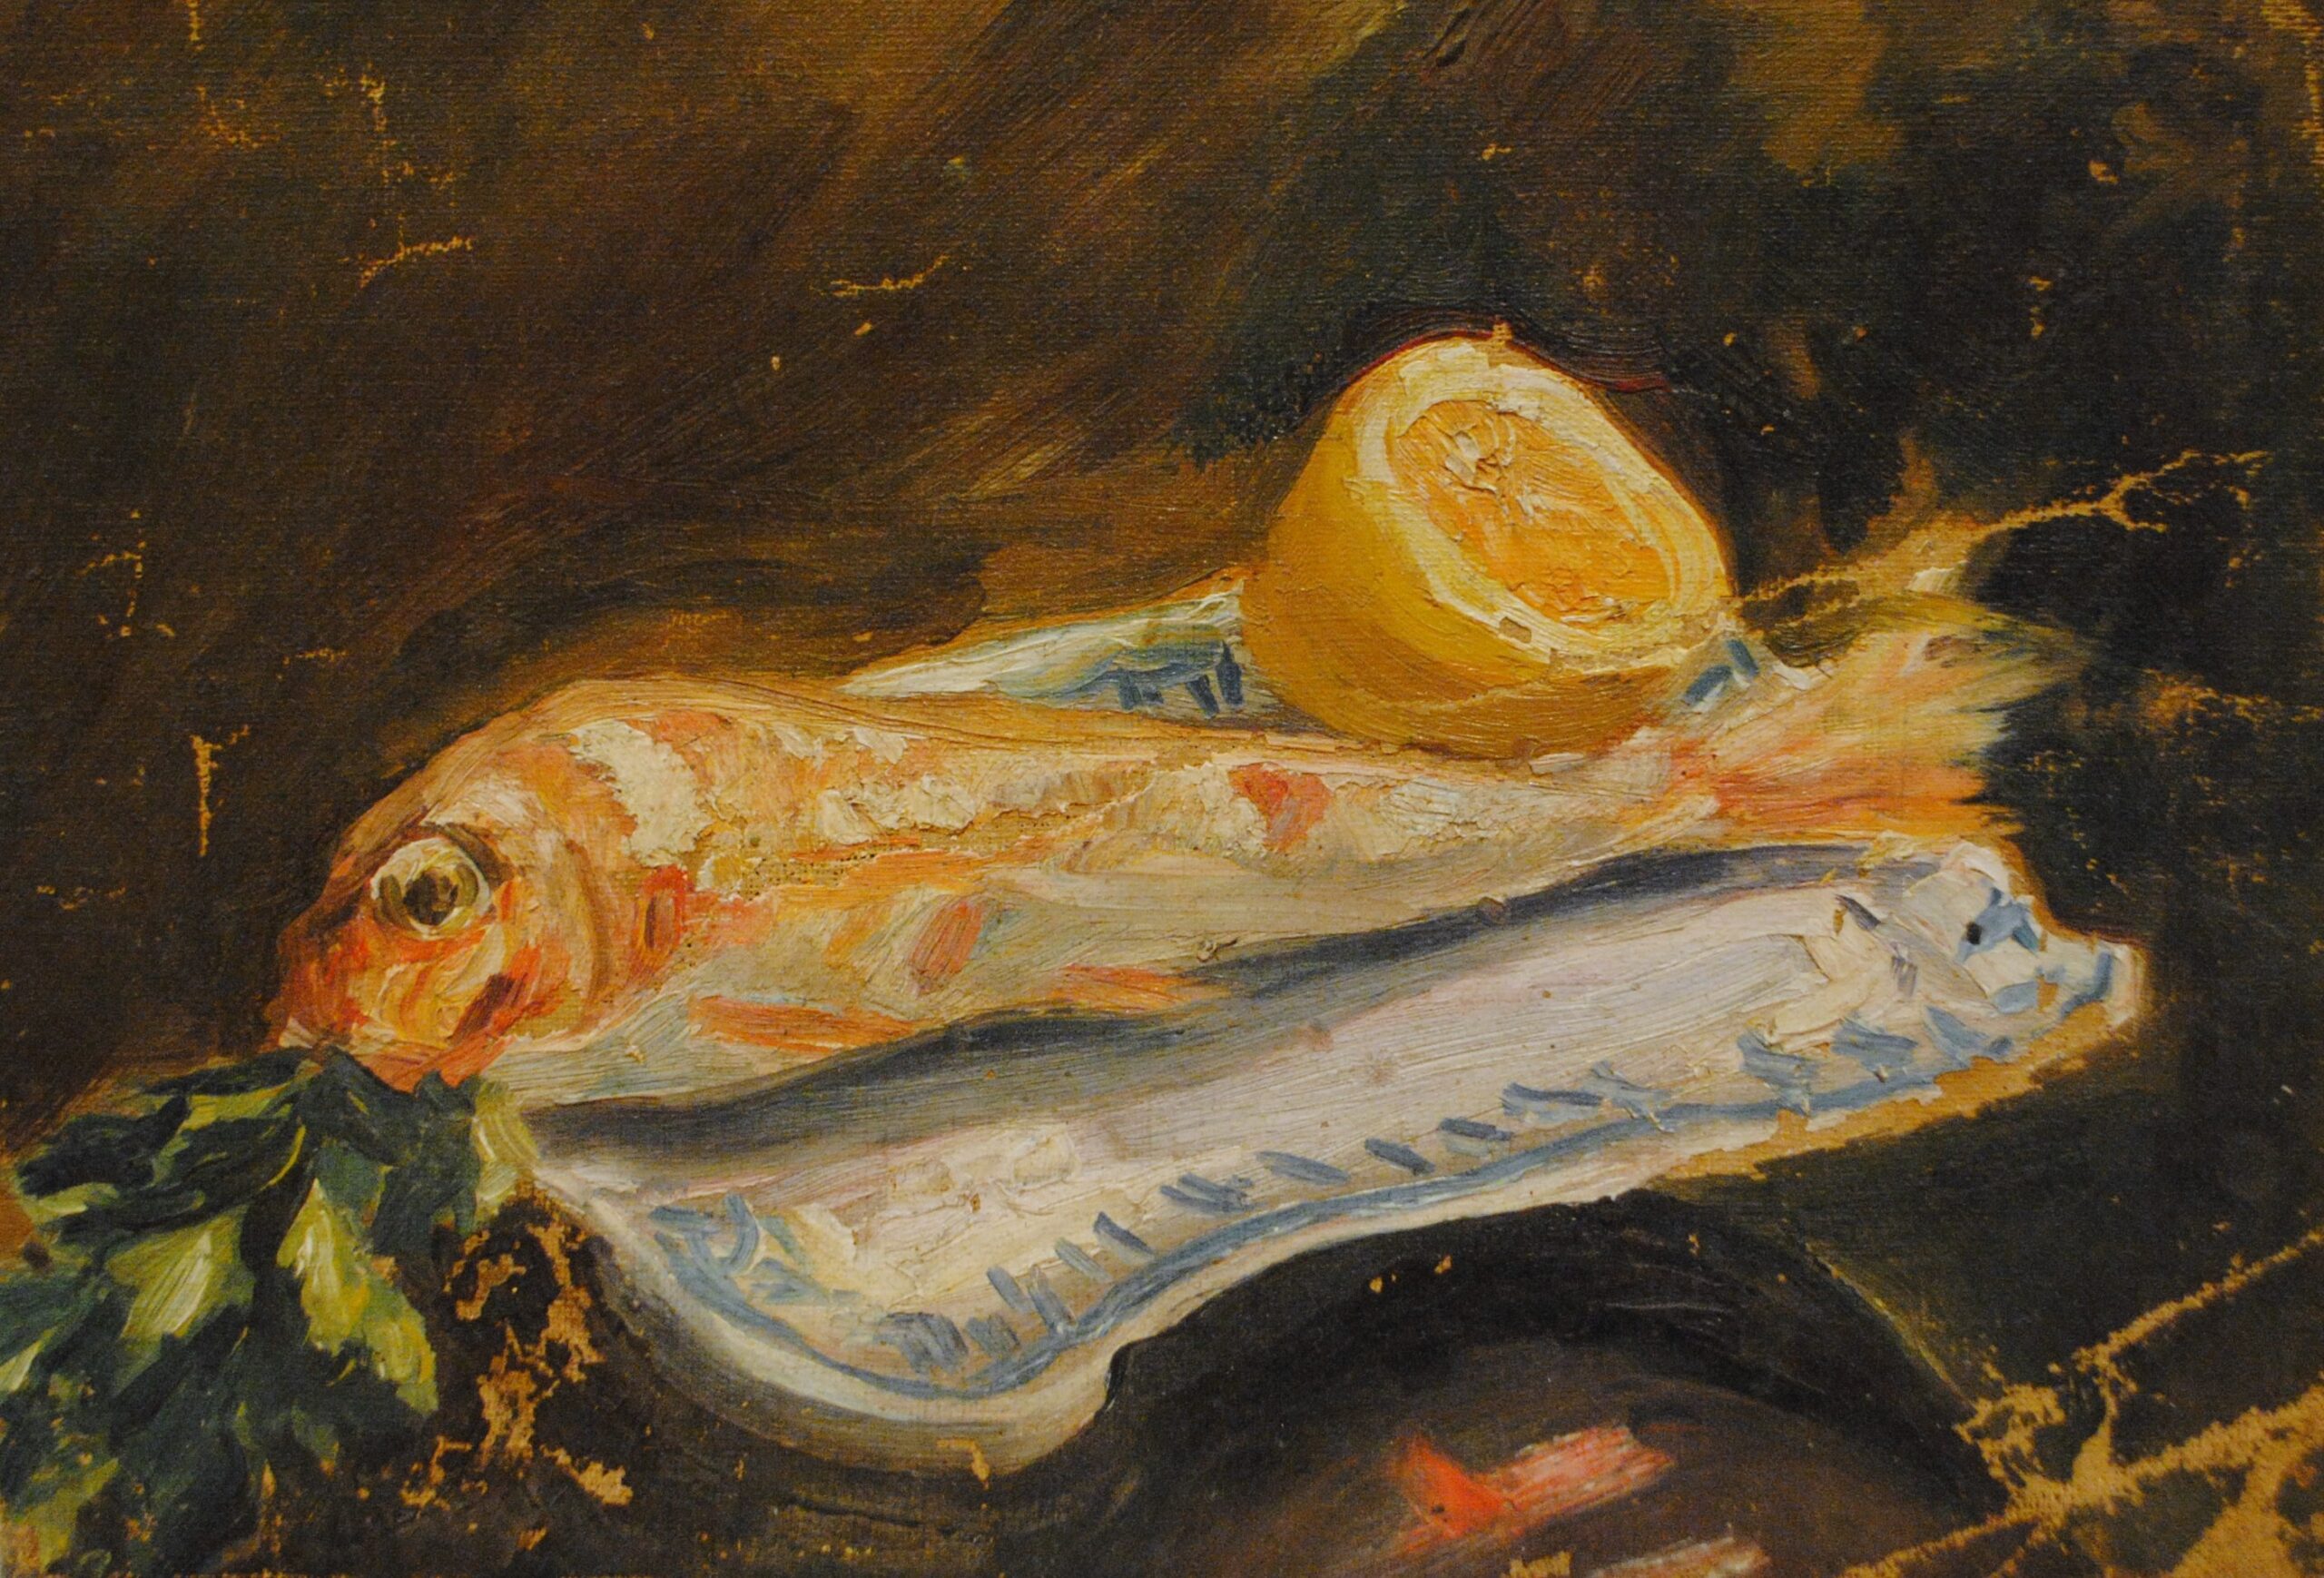 Pintura de José Manaut titulada Pescados y limón. Óleo sobre lienzo.